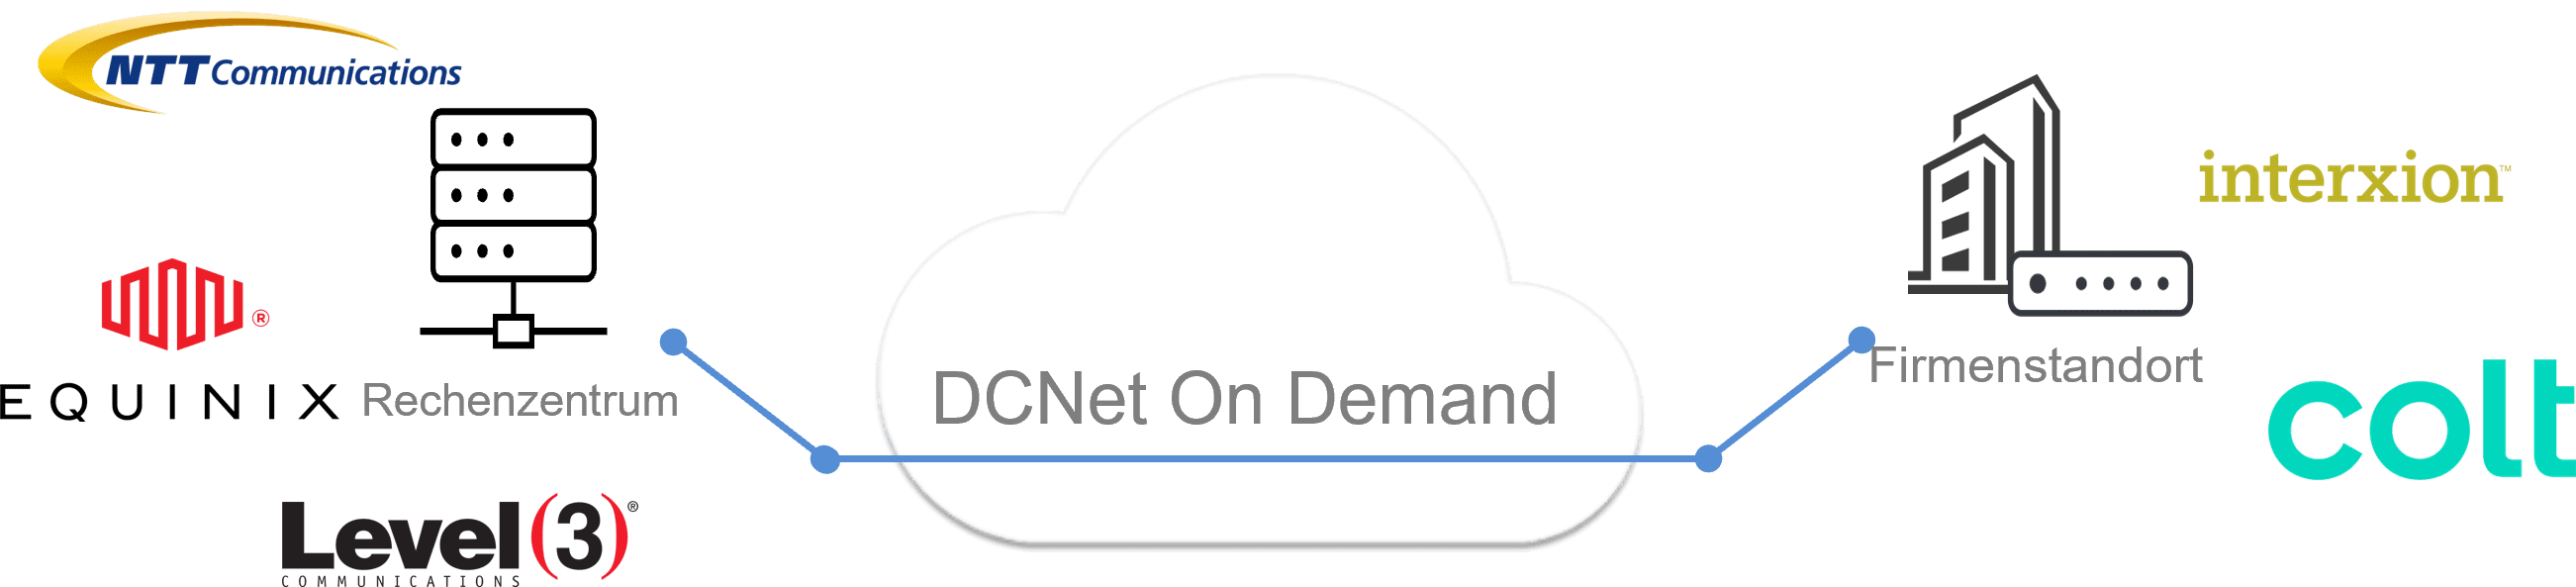 DCNet on Demand